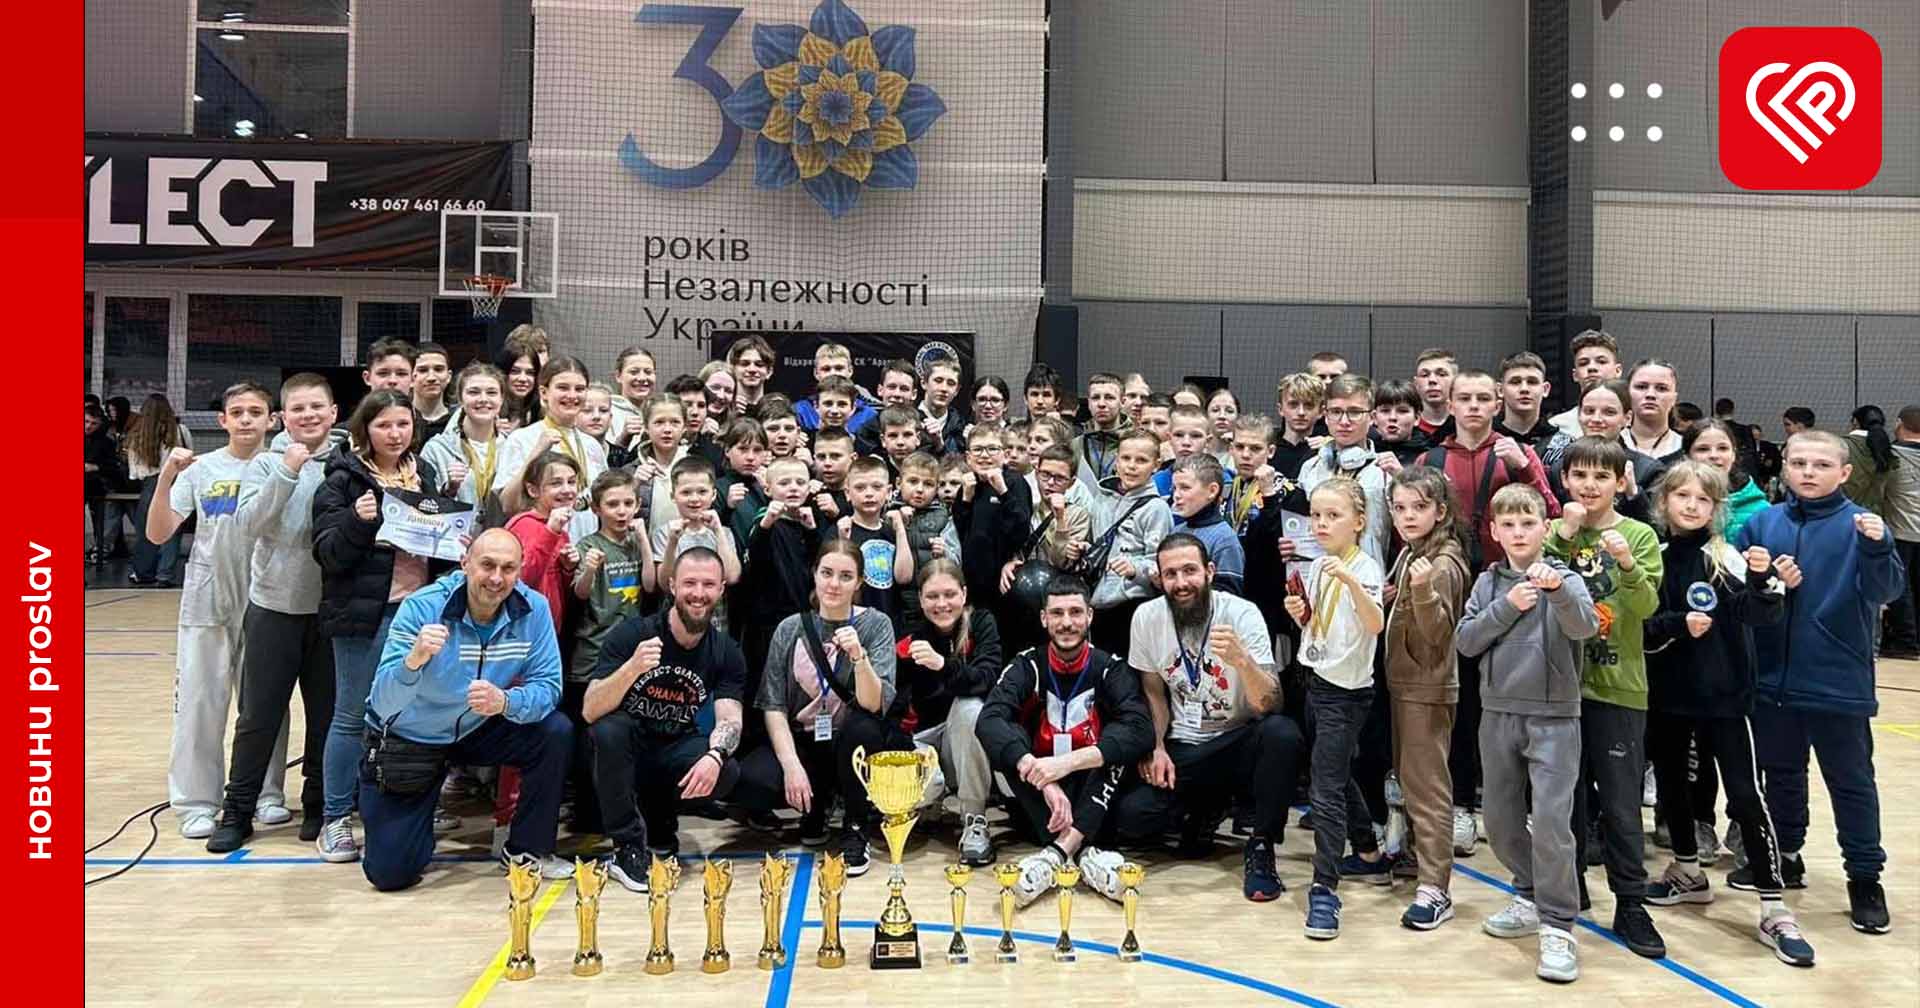 Ще 30 медалей у свою спортивну скарбничку виграли таеквондисти переяславського СК «АКУЛА»